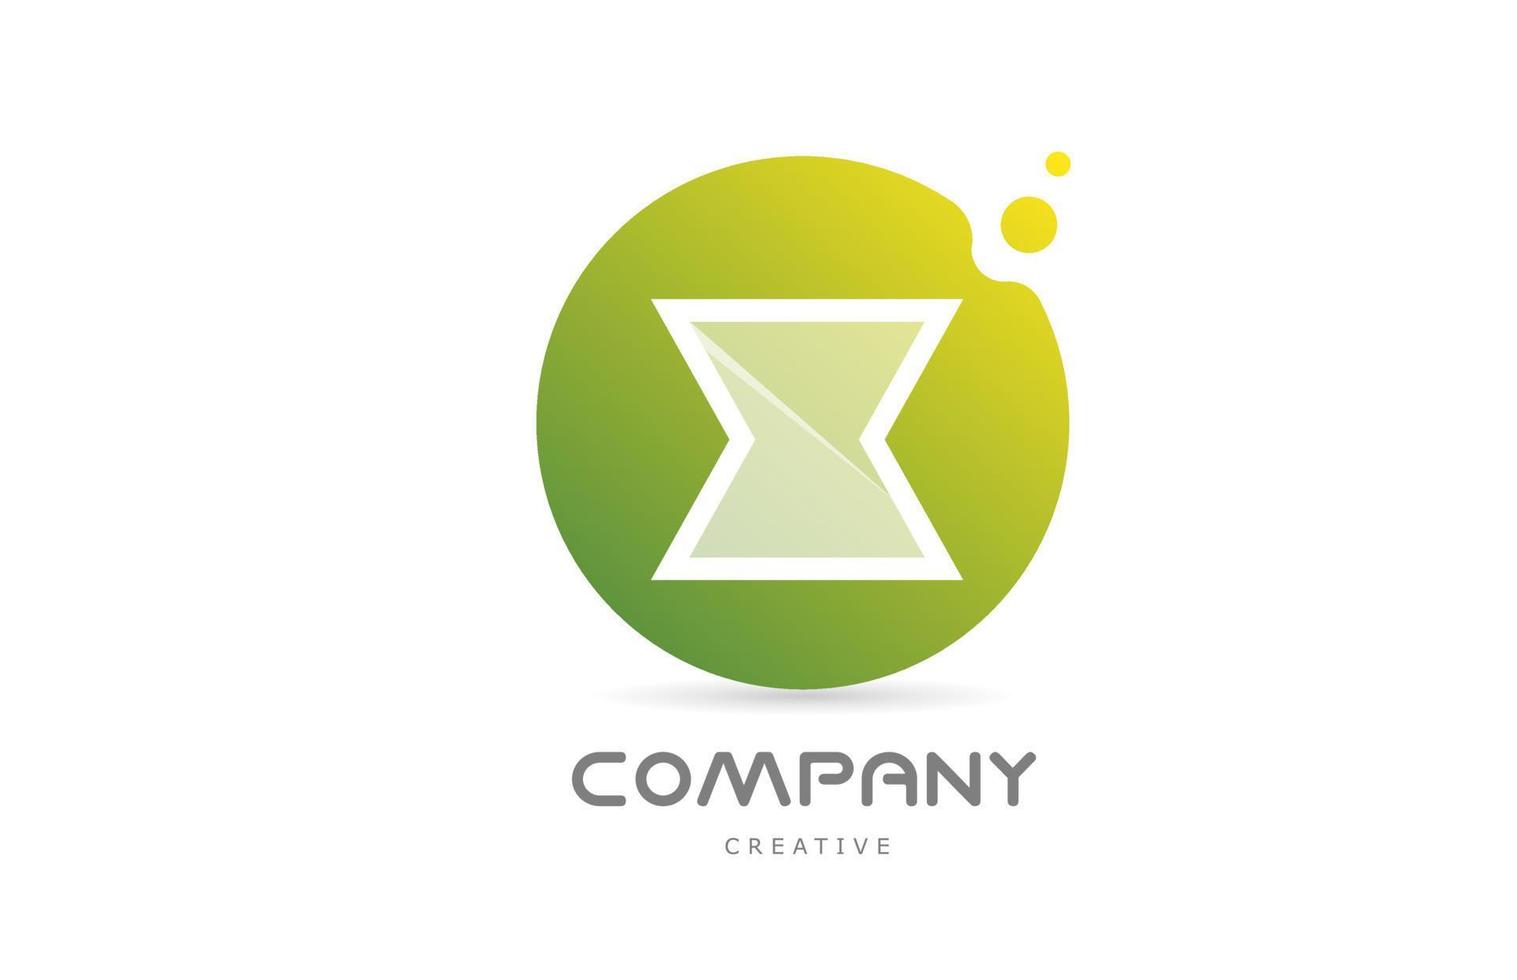 verde puntini X alfabeto lettera logo icona con bianca trasparenza. creativo modello per attività commerciale vettore